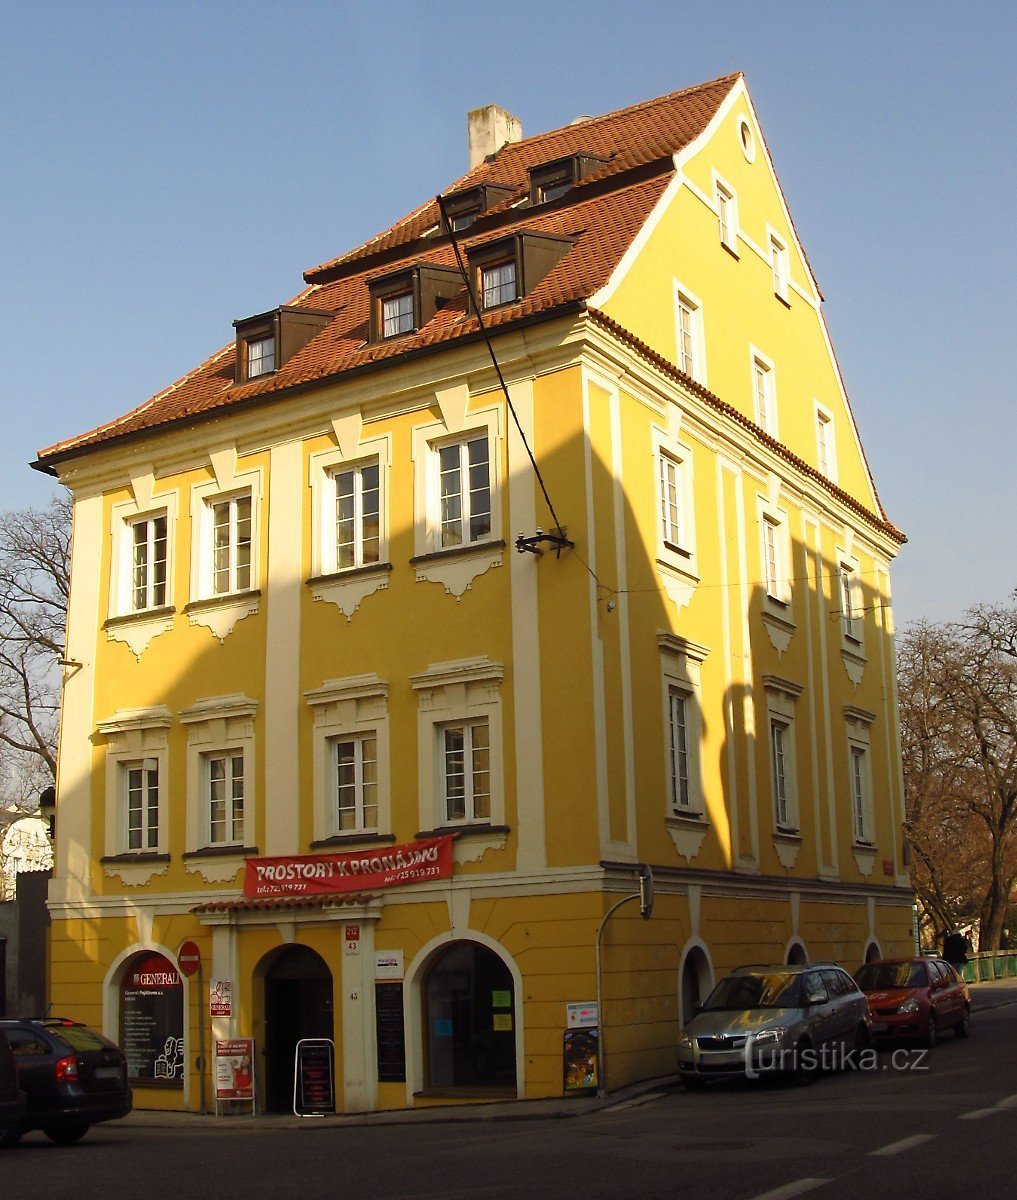 Taxberger House - České Budějovice